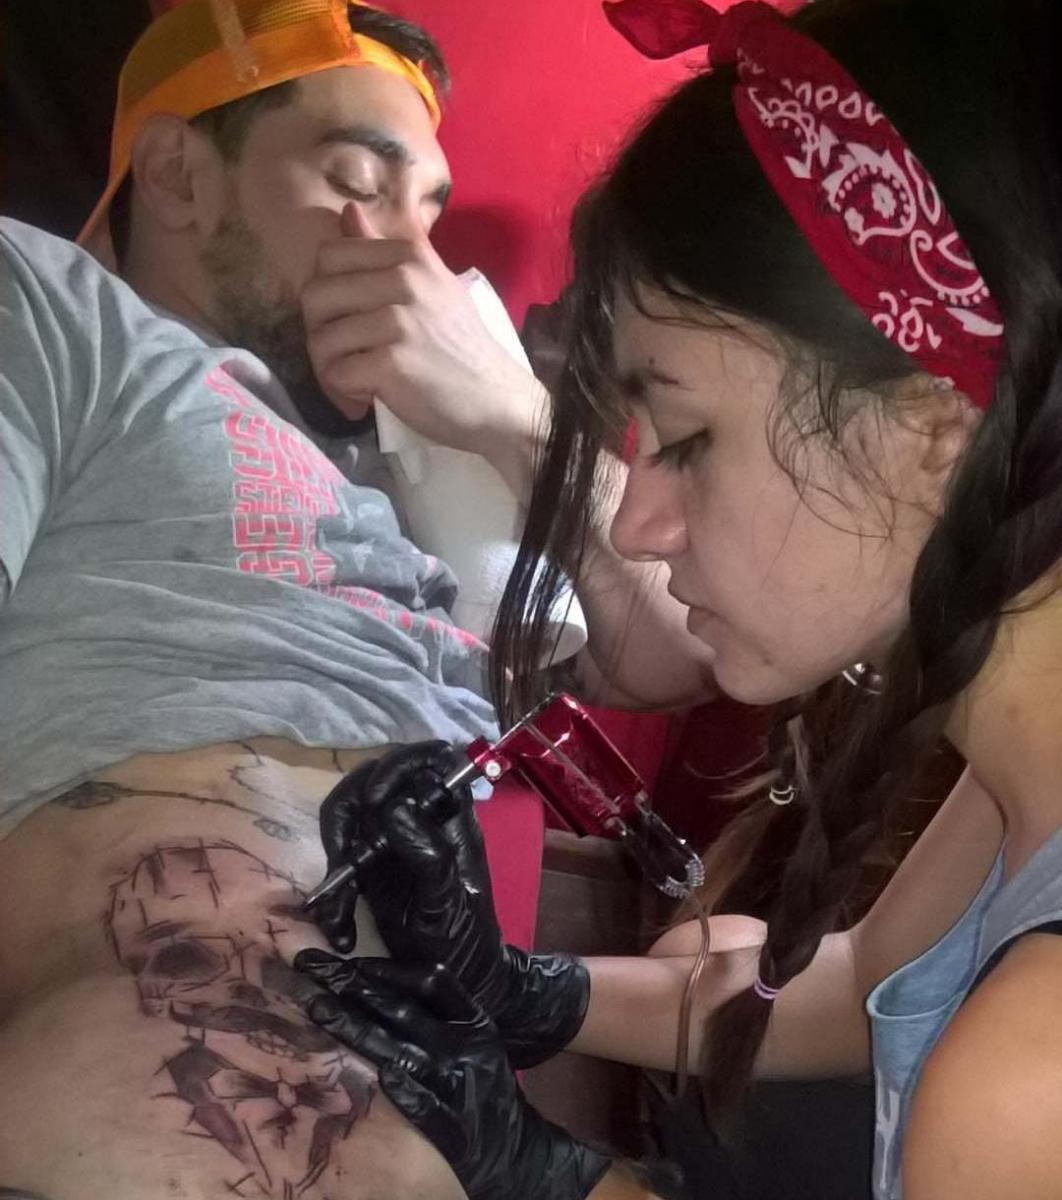 A PRACTICAR. La tatuadora le hizo su primer tatuaje a un vecino. / INSTAGRAM @paulatusa.